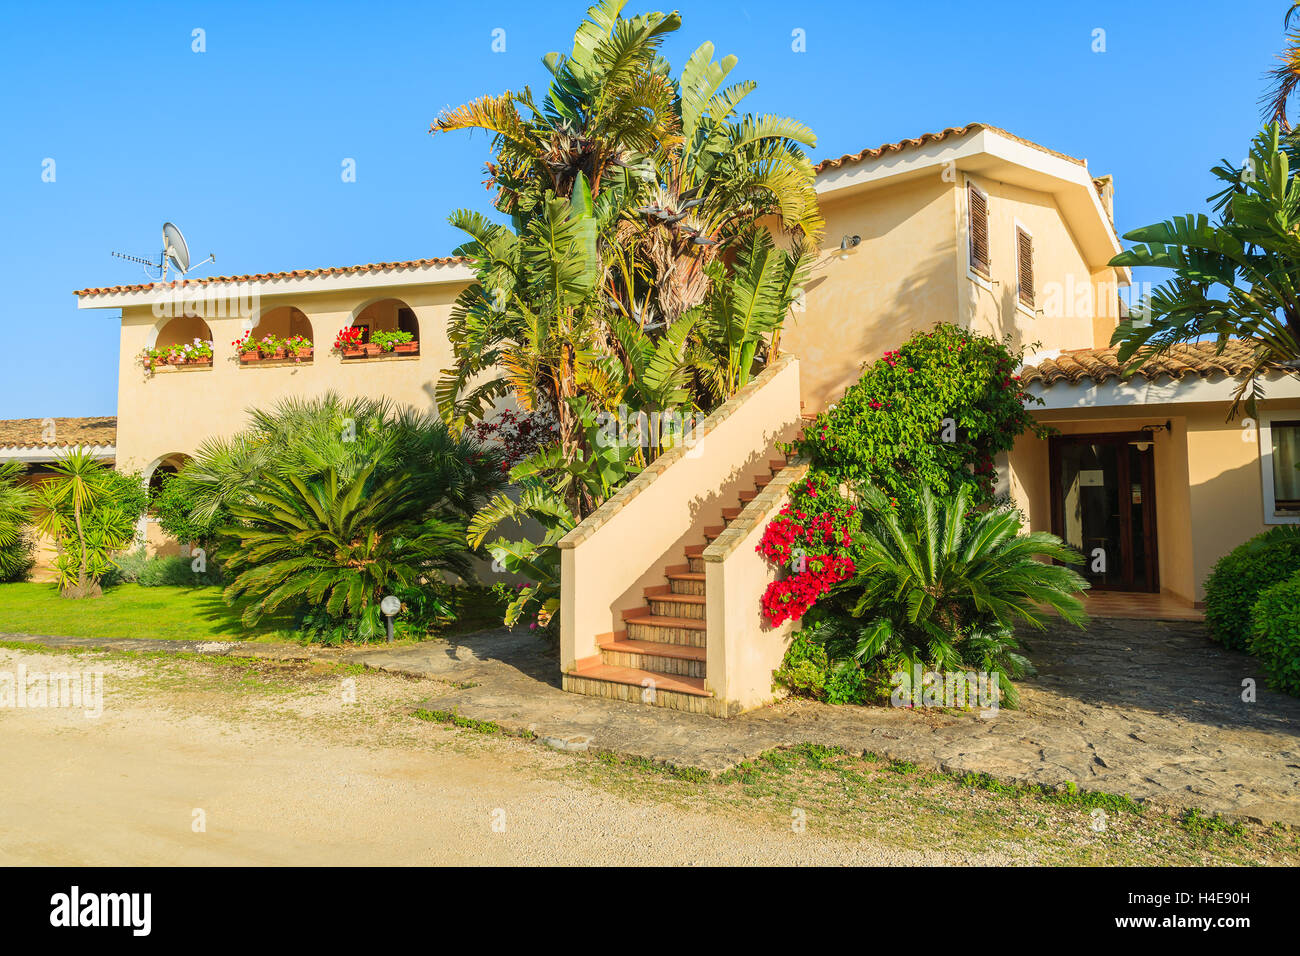 PORTO GIUNCO, Sardinien - 24. Mai 2014: Ferien-Apartment-Hotel in einem tropischen Garten, Insel Sardinien, Italien. Südlichen Teil der Insel ist für Strandurlaub unter den Europäern beliebt. Stockfoto